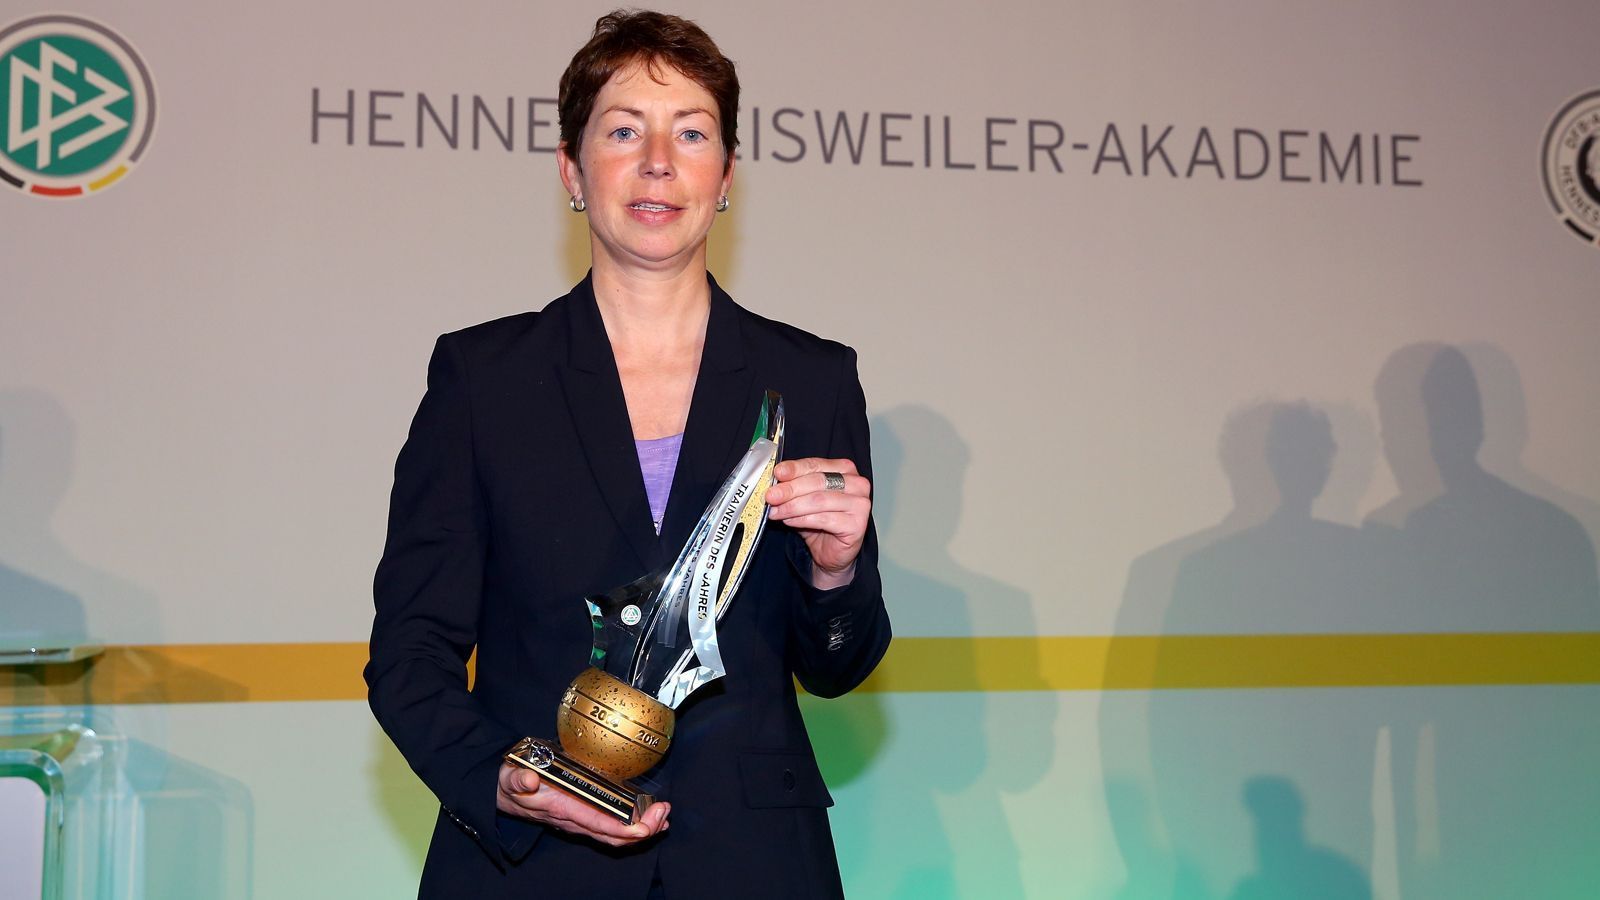 
                <strong>Maren Meinert (2014)</strong><br>
                Als bislang einzige Frau erhielt Maren Meinert den Preis zum Trainer des Jahres des deutschen Fußballs. 2014 führte die frühere Nationalspielerin die deutsche U20 bei der Frauen-WM zum Titel, wie auch schon 2010. In den Jahren 2006, 2007 und 2011 war Meinert zudem die Trainerin der bei der U-19-EM jeweils erfolgreichen, deutschen Frauen-Nationalmannschaft. 
              